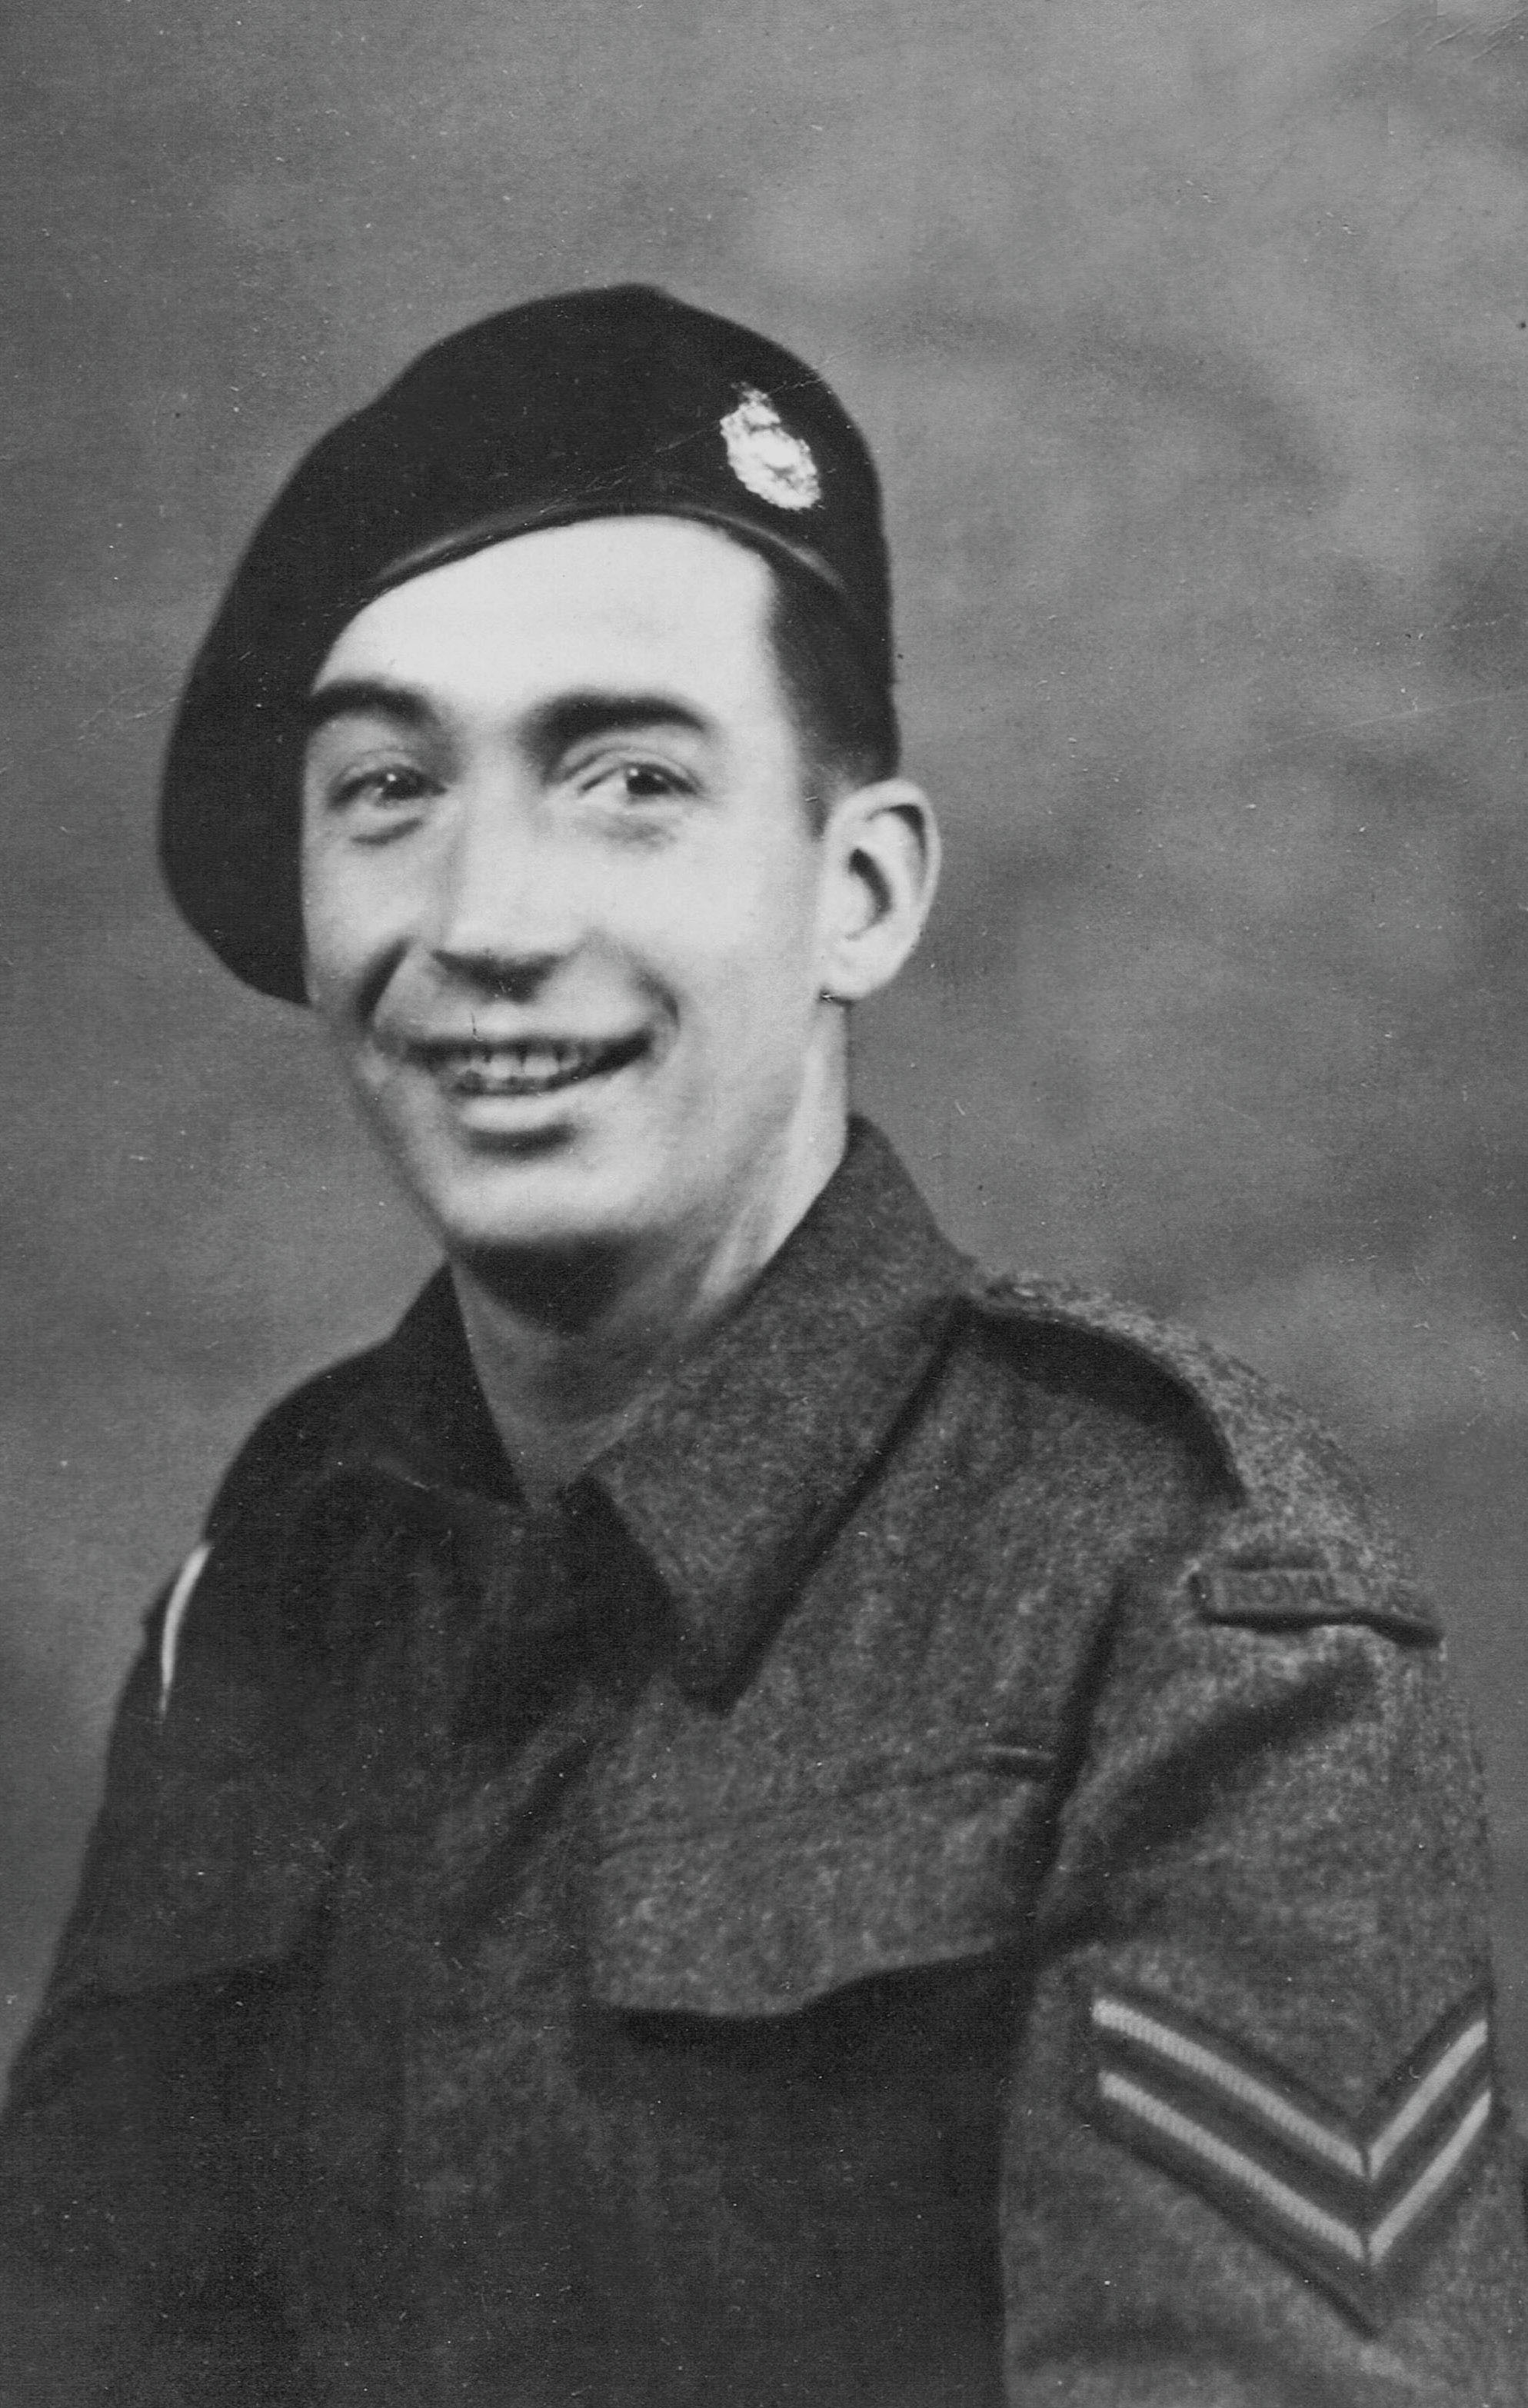 Corporal James Gallacher